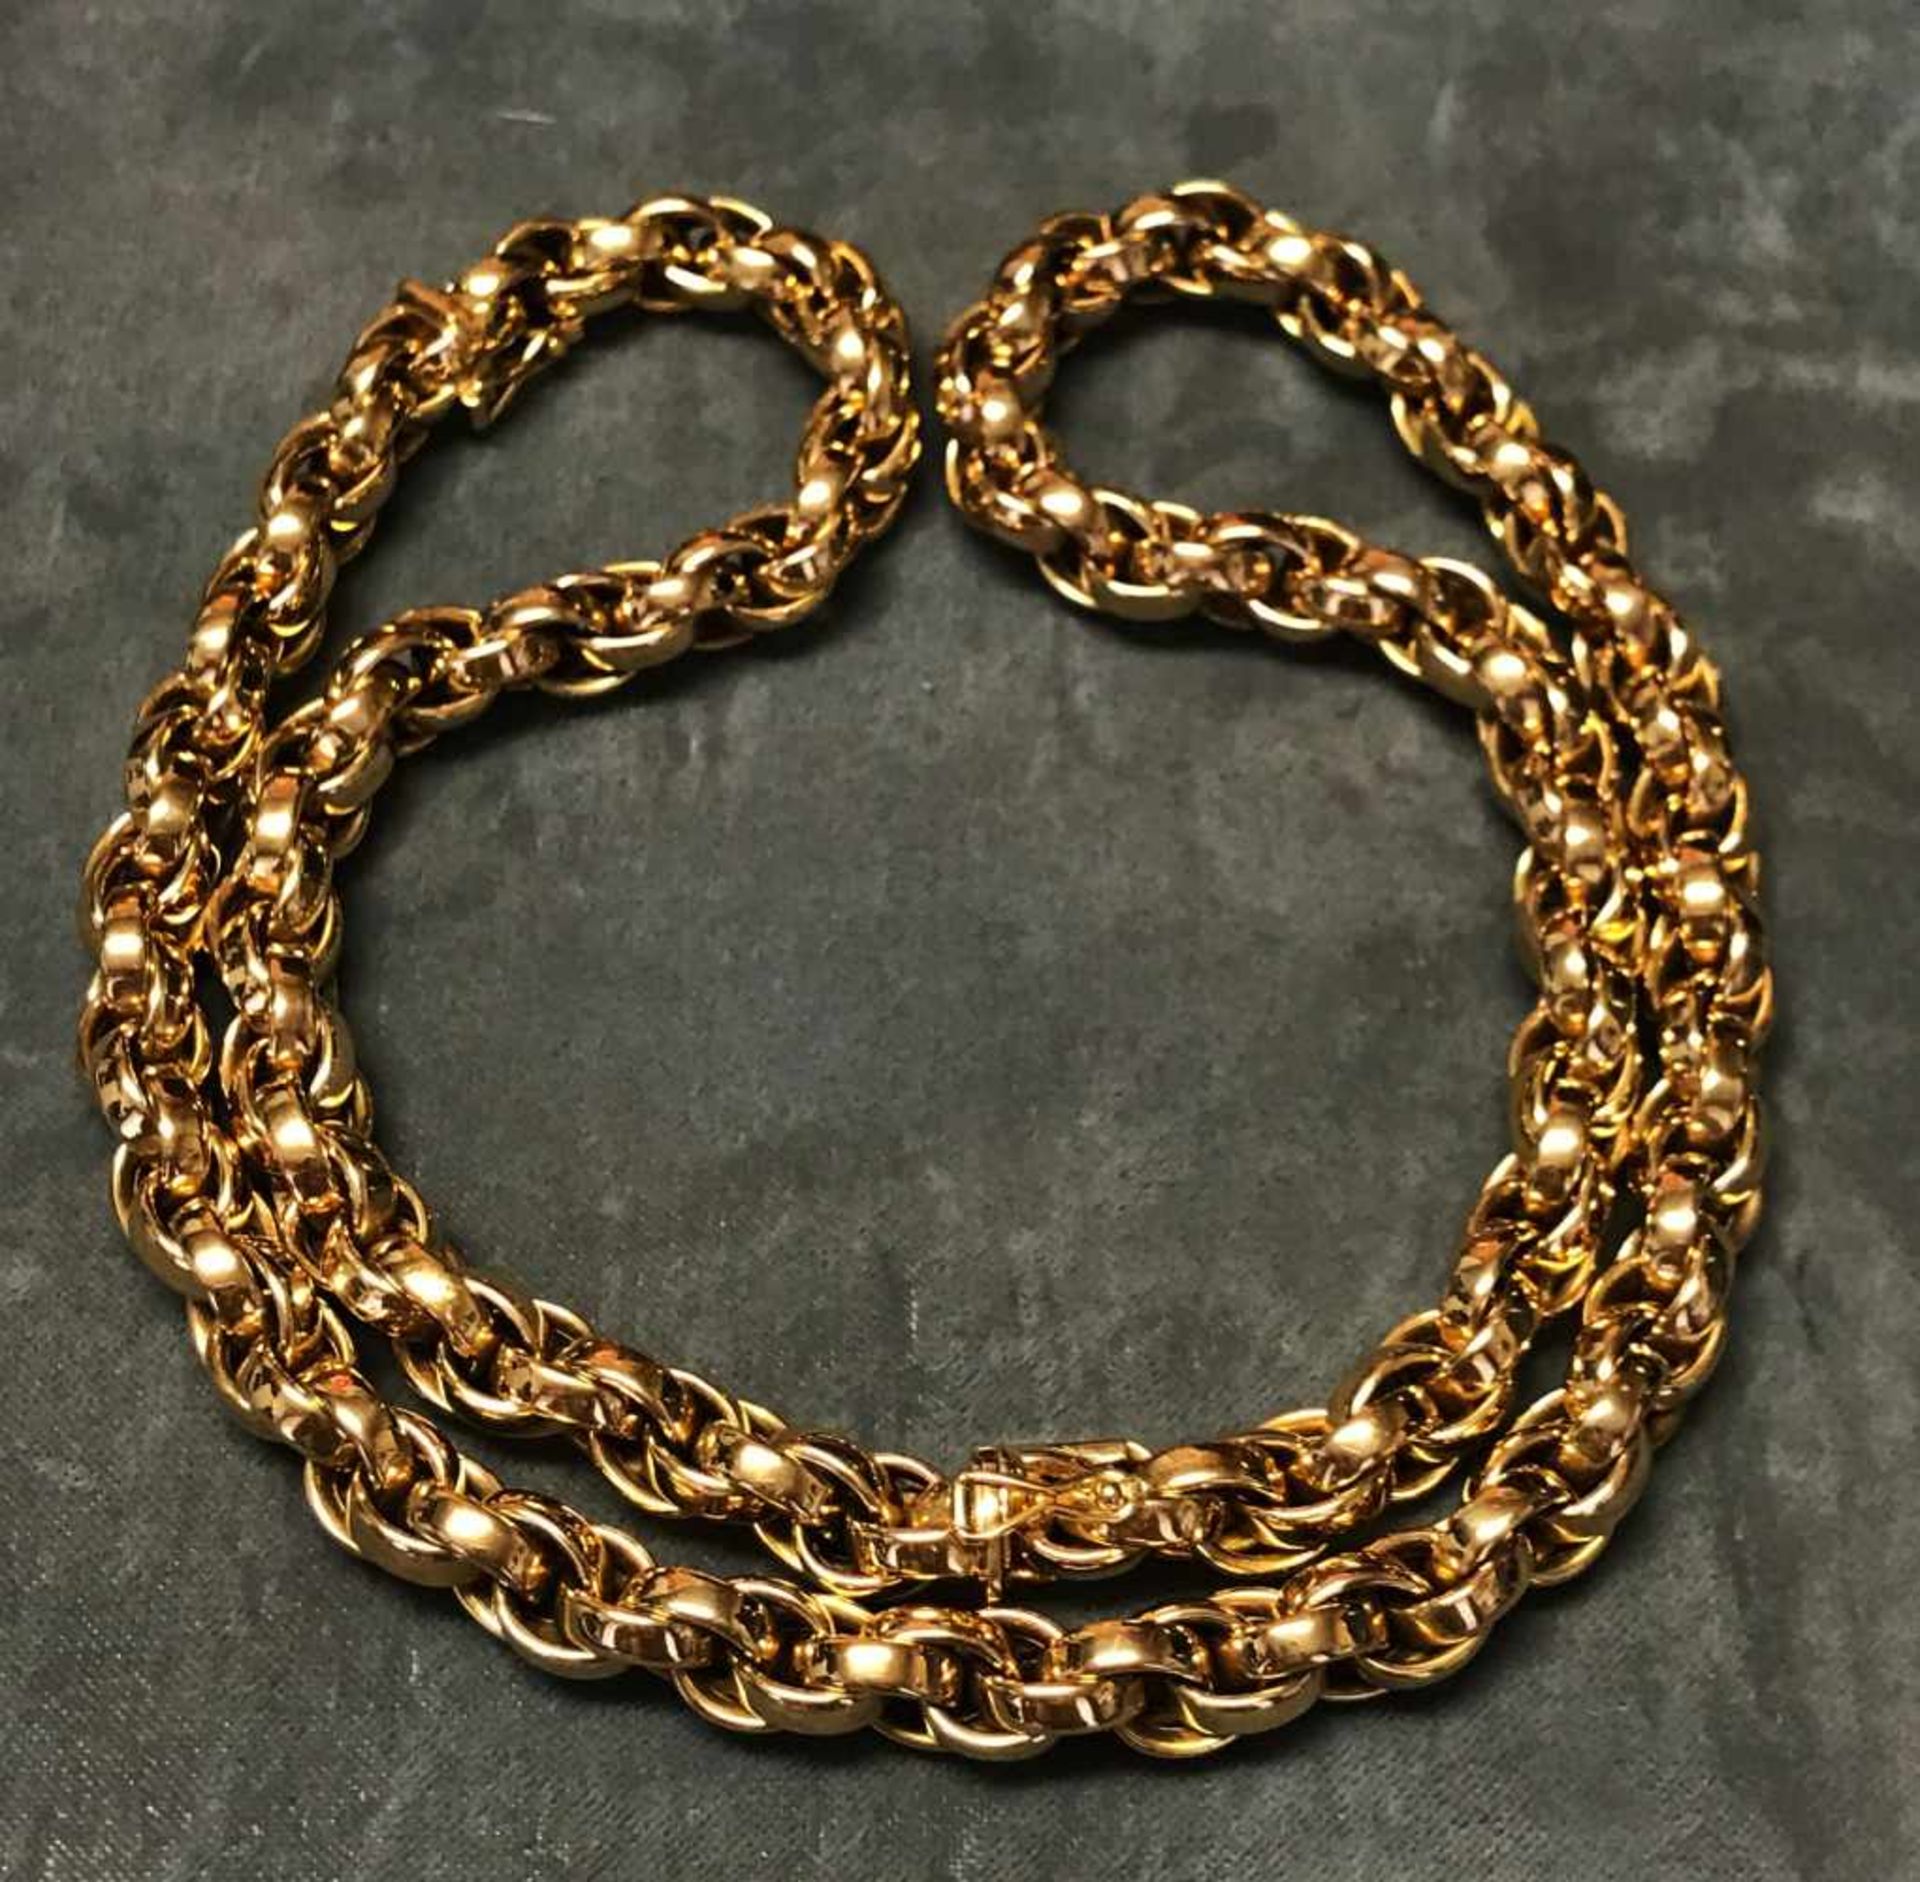 Goldkette, 750er GG, gepunzt, als verlängerte Kette bzw. als Kette und Armband zu tragen,